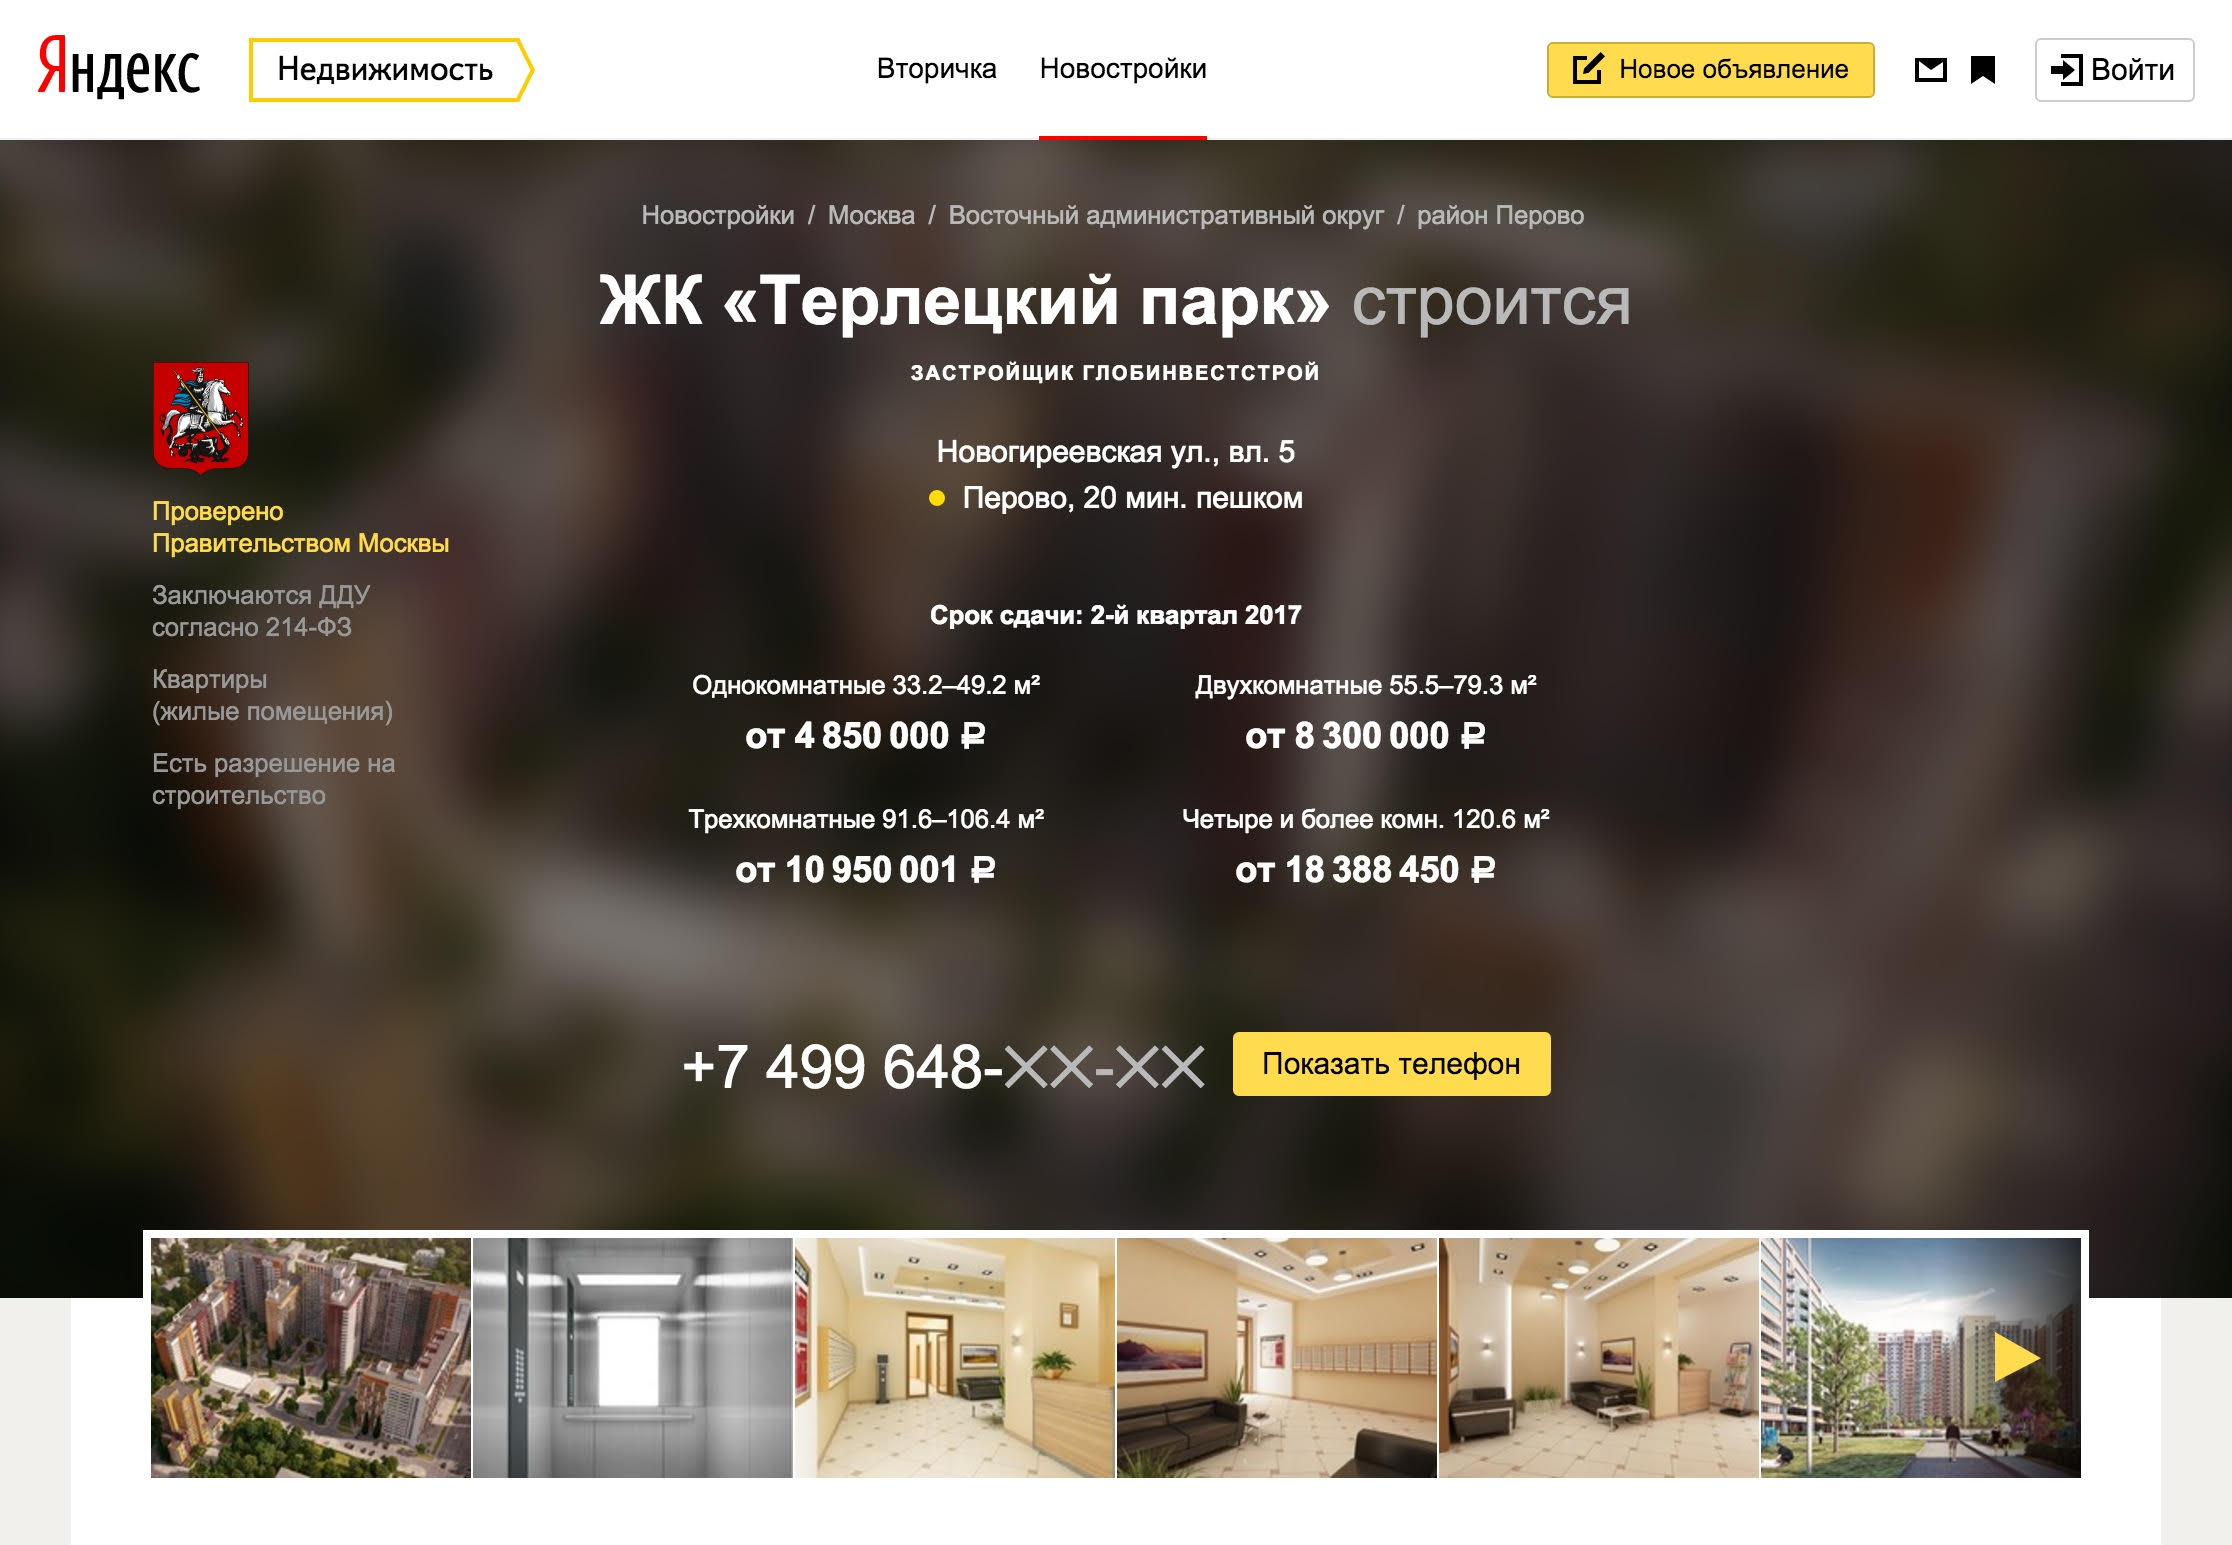 Яндекс.Недвижимость начала помечать легальные новостройки